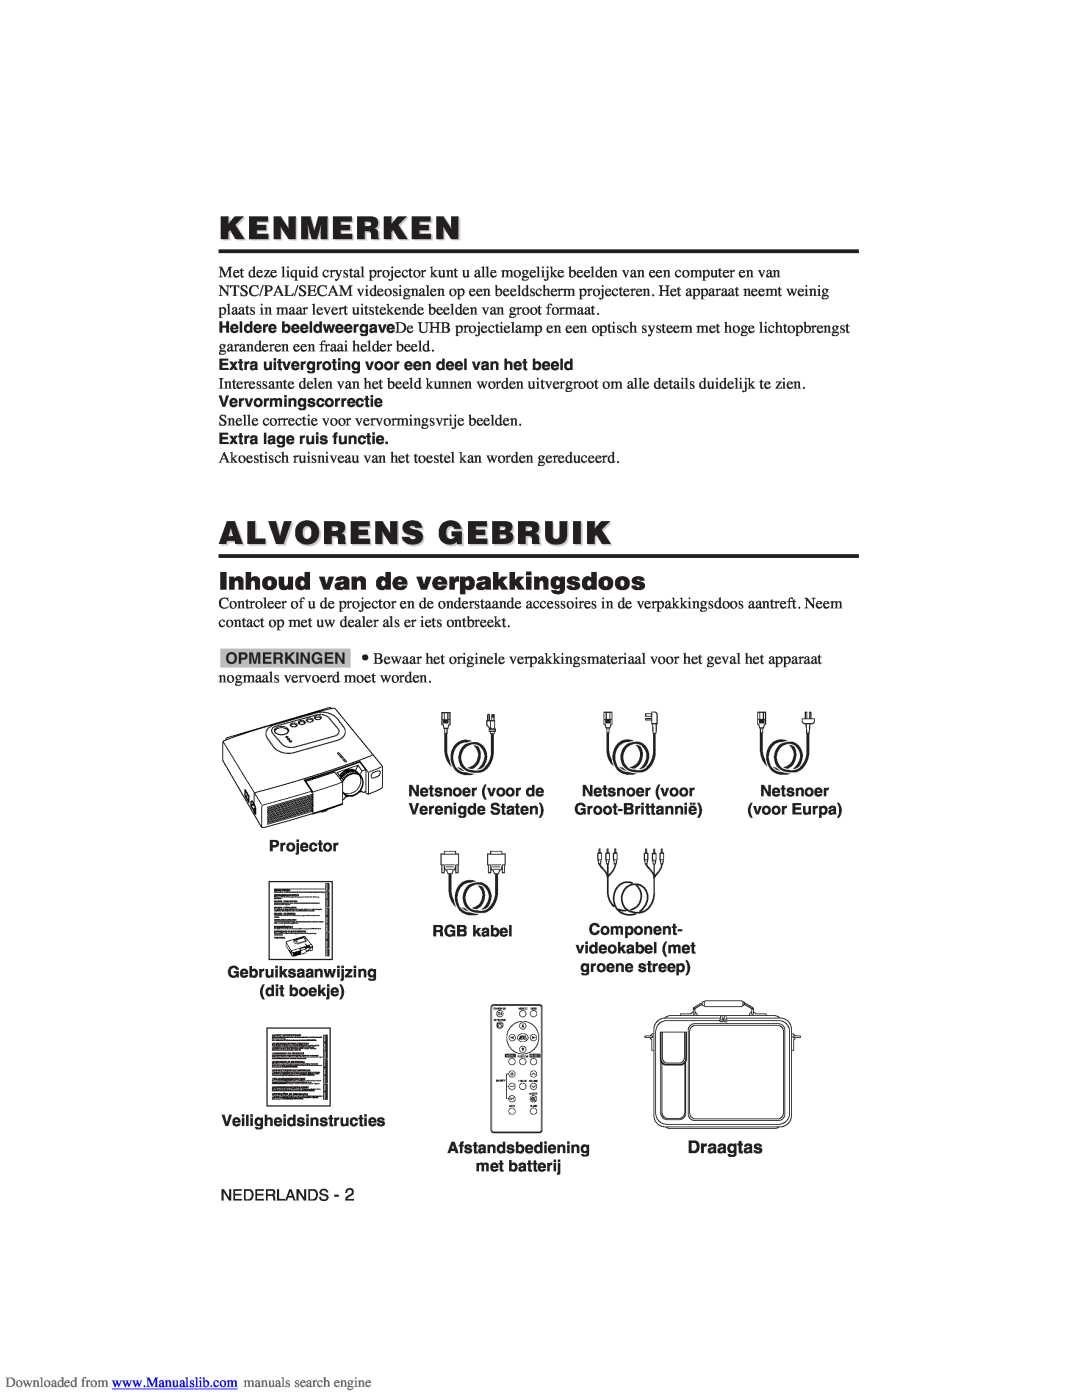 Hitachi CP-X275W user manual Kenmerken, Alvorens Gebruik, Inhoud van de verpakkingsdoos, Draagtas 